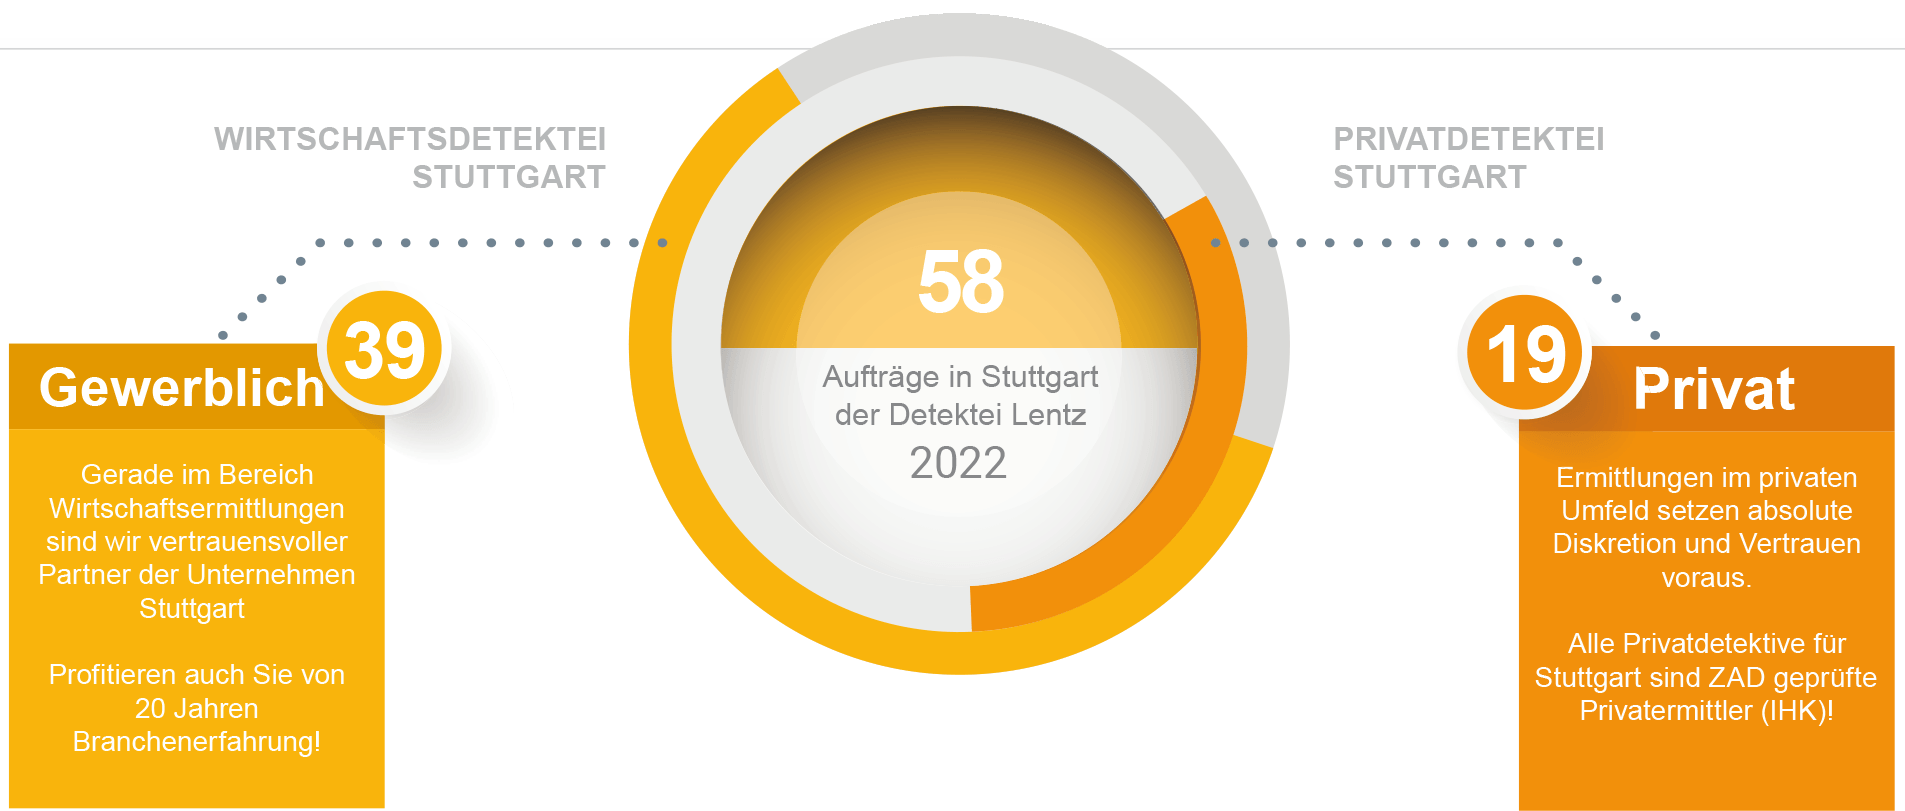 Aufträge für 2022 der Detektei Stuttgart